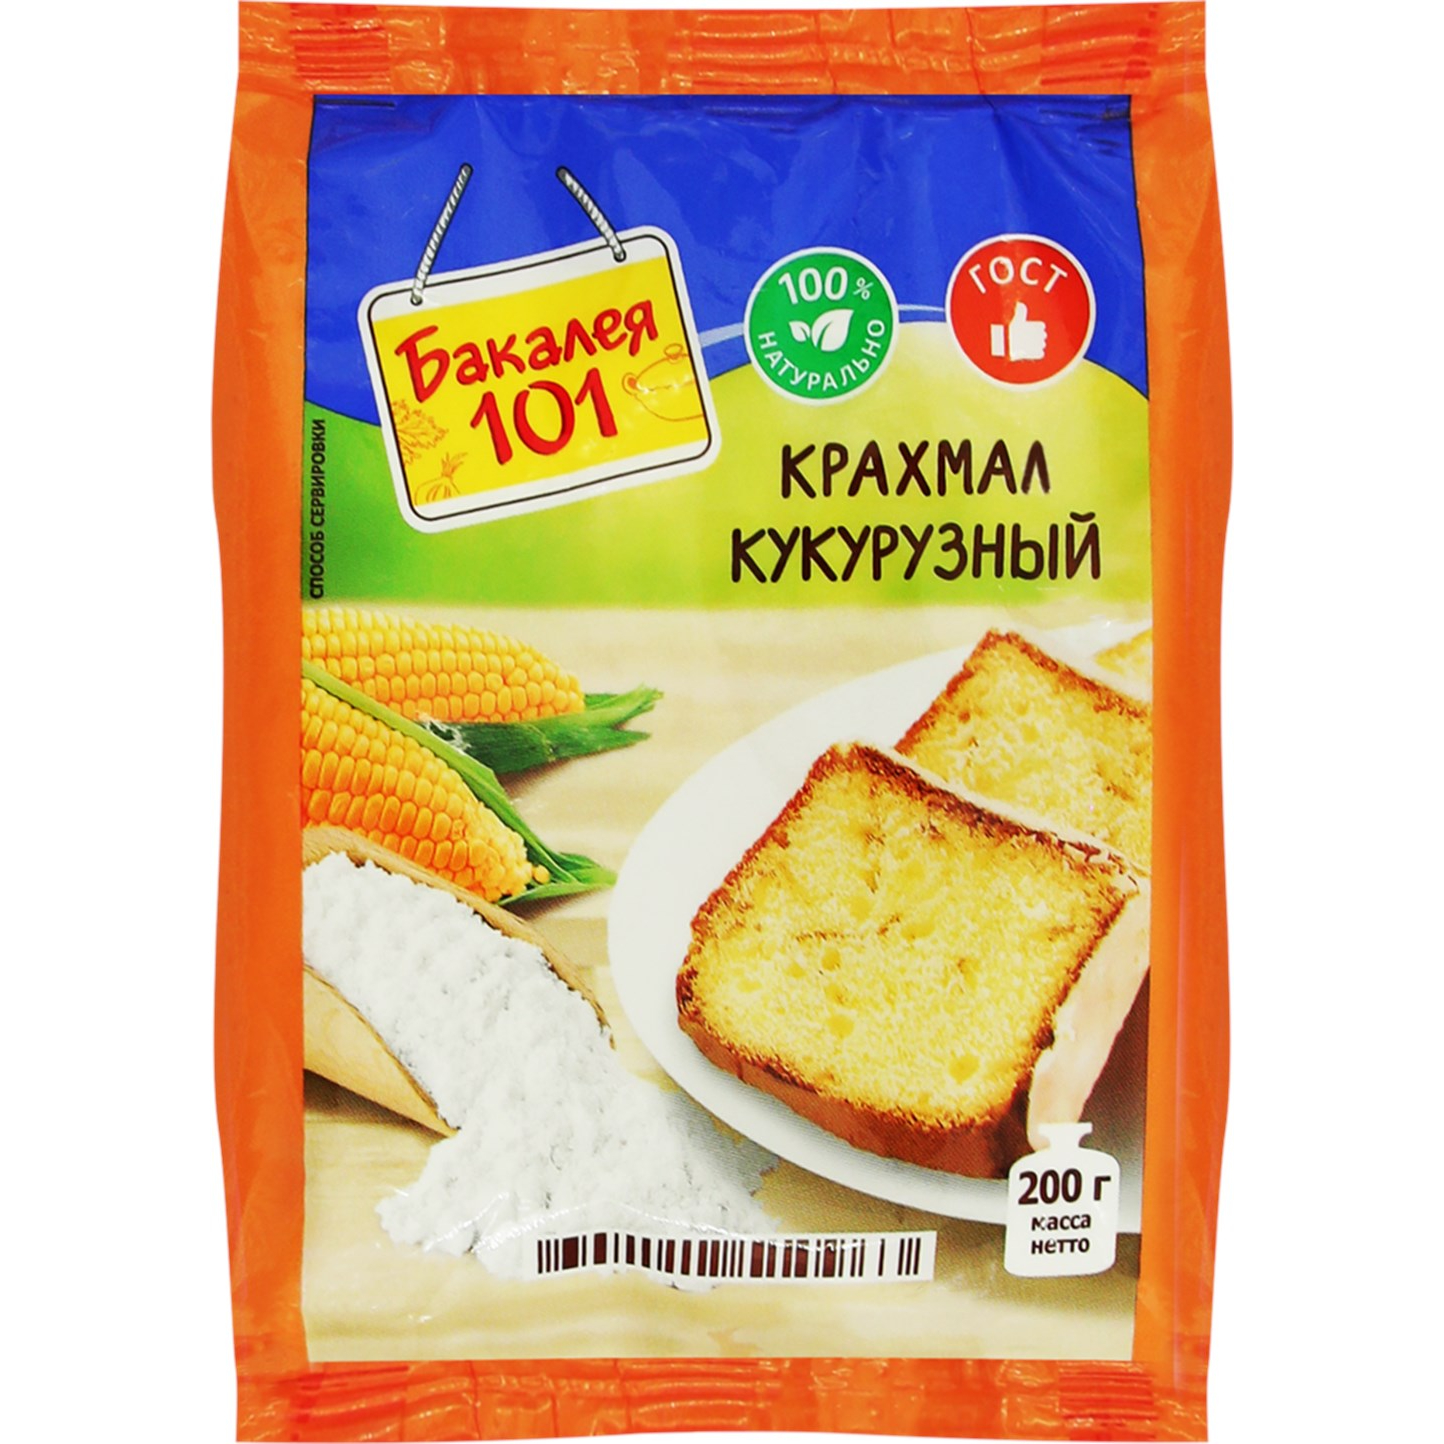 крахмал картофельный русский продукт бакалея 101 200 г Крахмал кукурузный Русский продукт Бакалея 101 200 г